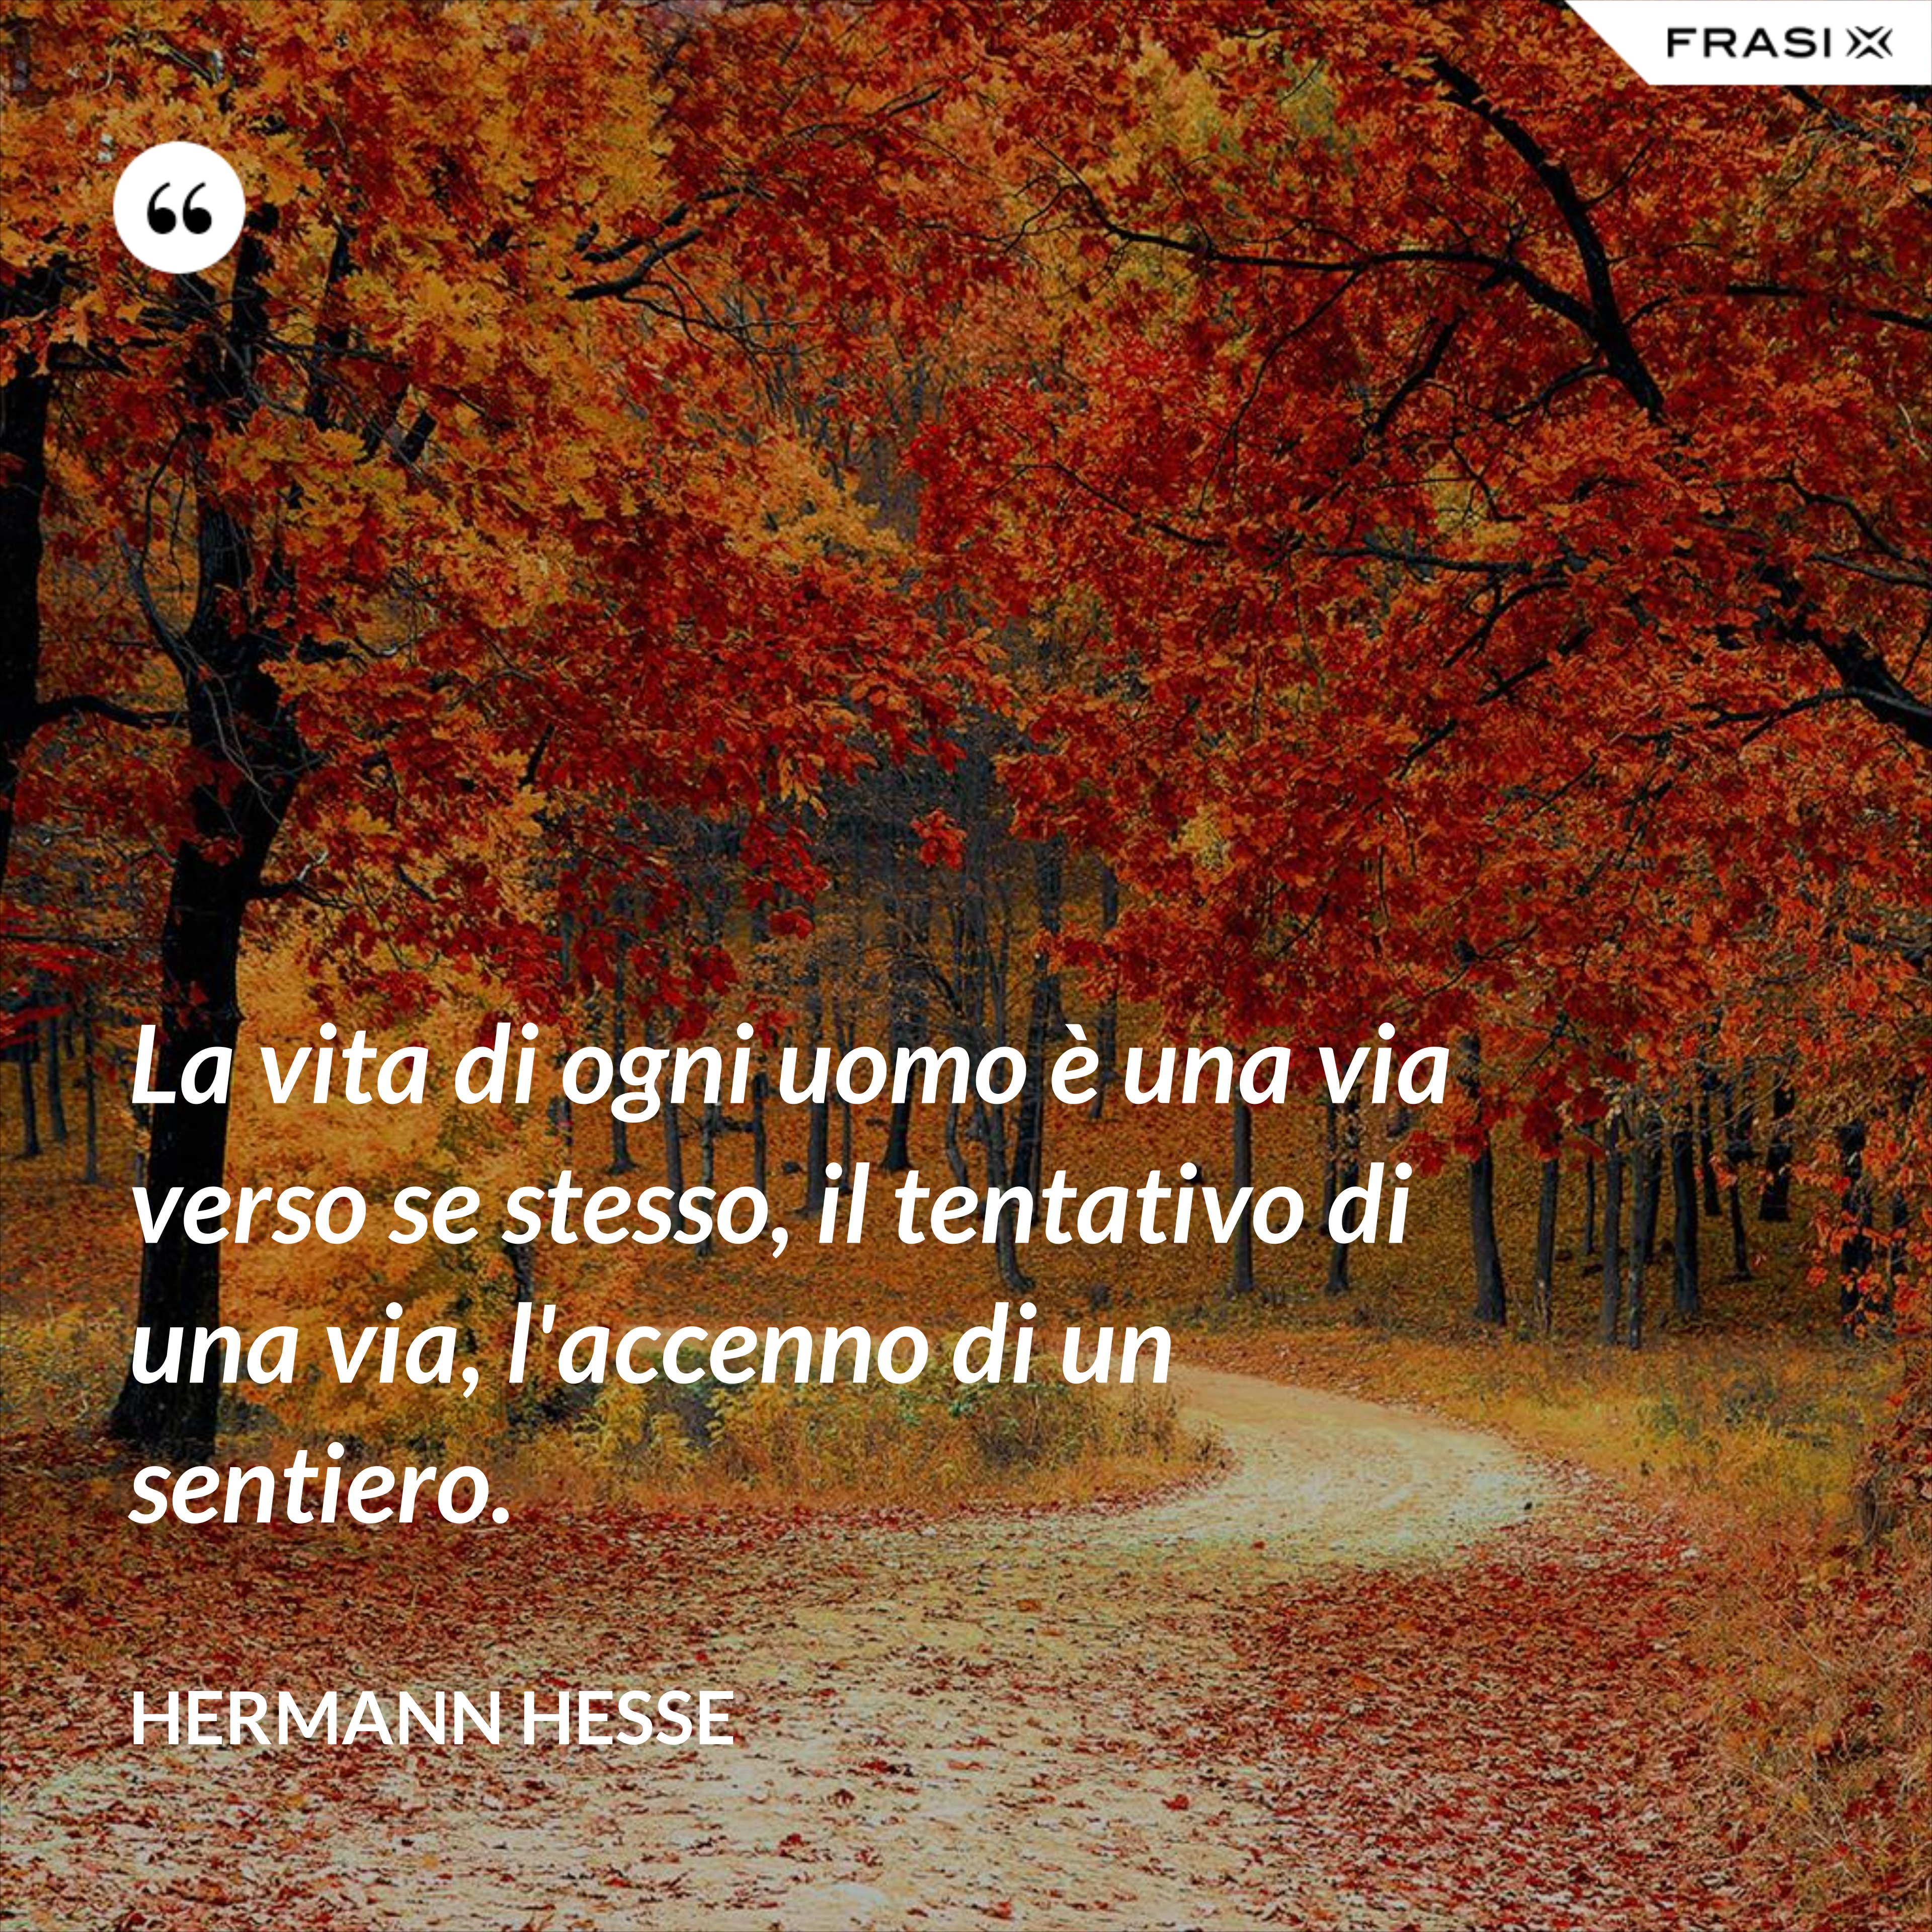 La vita di ogni uomo è una via verso se stesso, il tentativo di una via, l'accenno di un sentiero. - Hermann Hesse